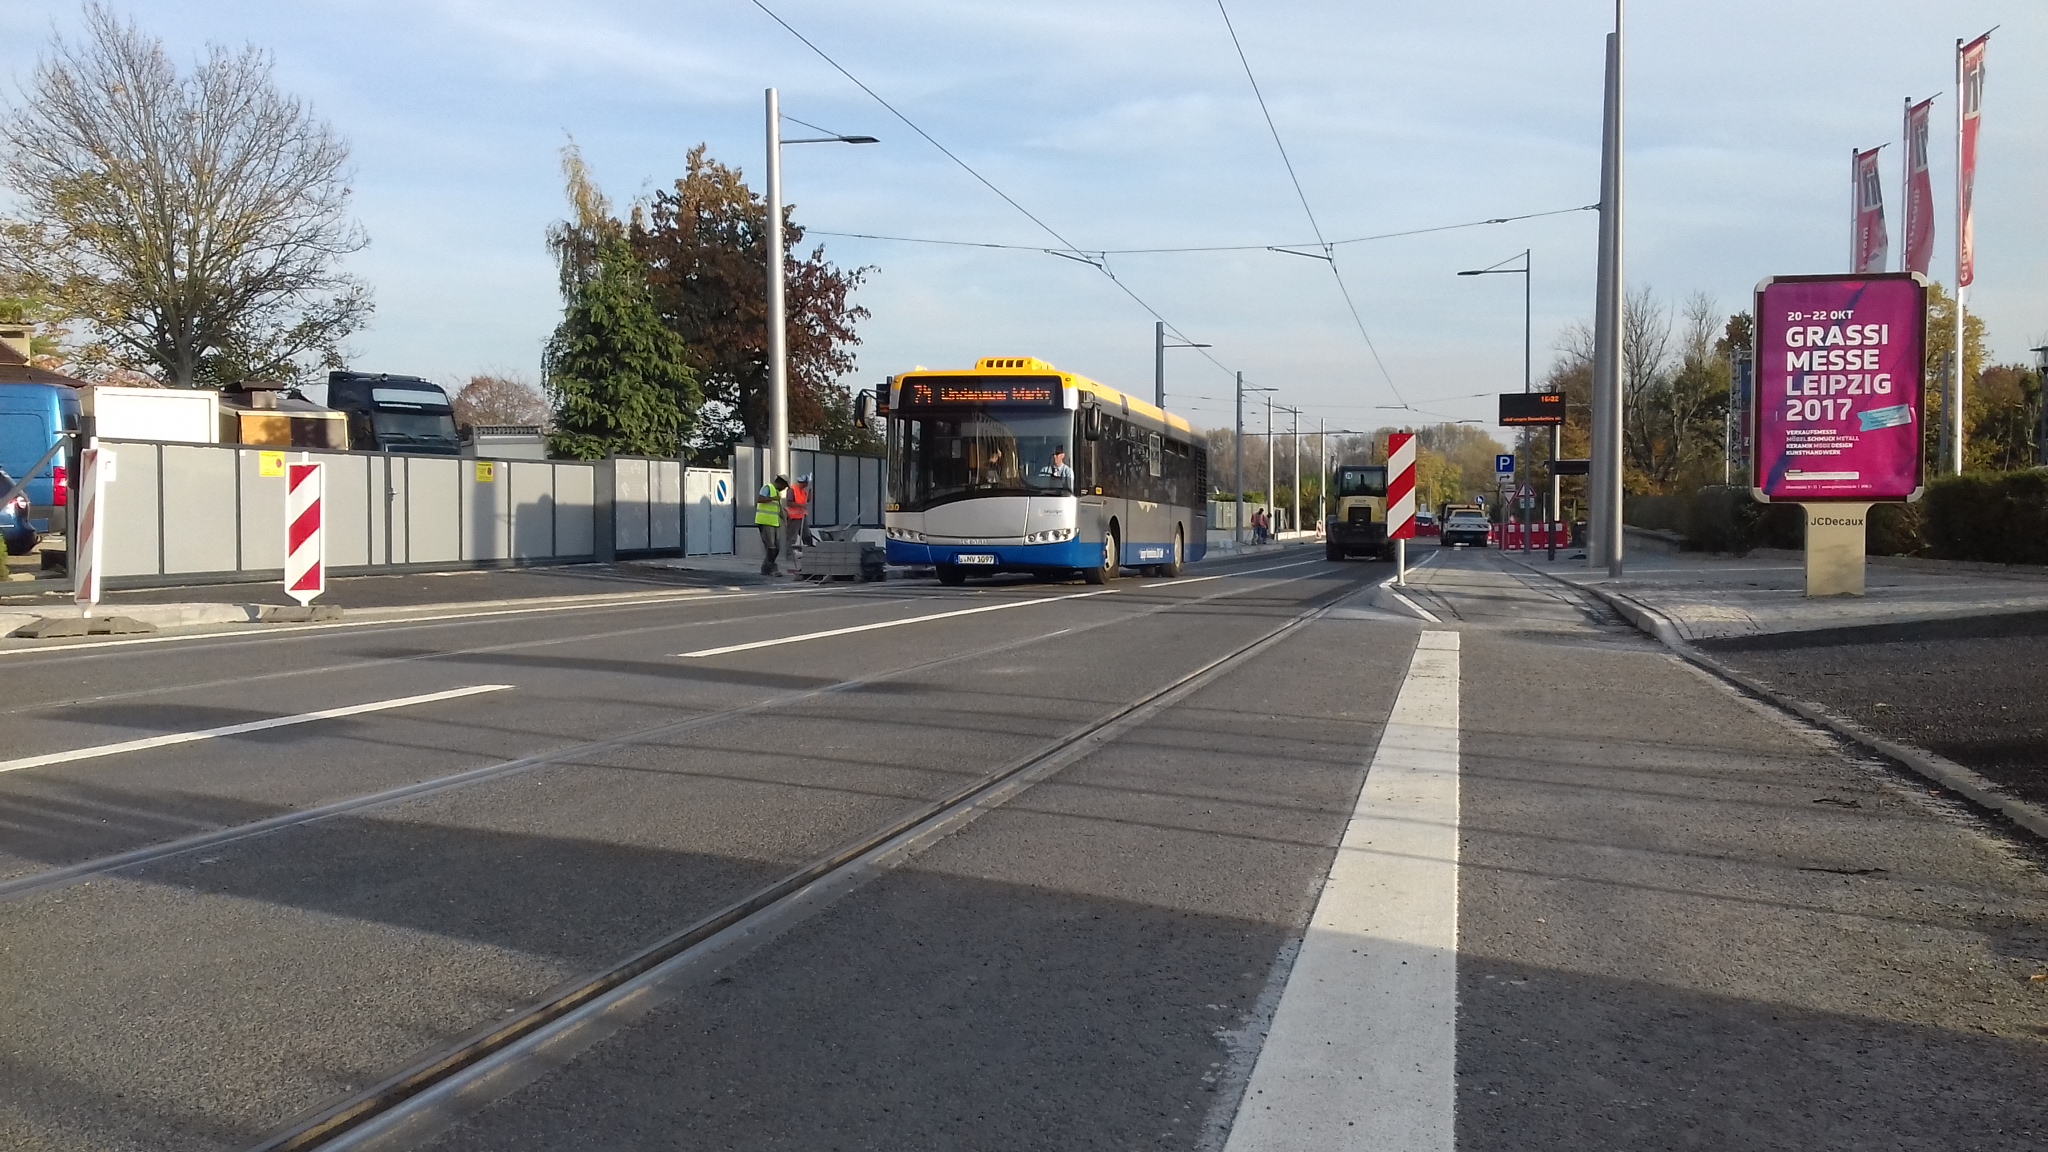 Pressemeldung der Stadt Leipzig: Holzhäuser Straße wieder für Busverkehr freigegeben – Einschränkungen für Autos bis 27. Oktober